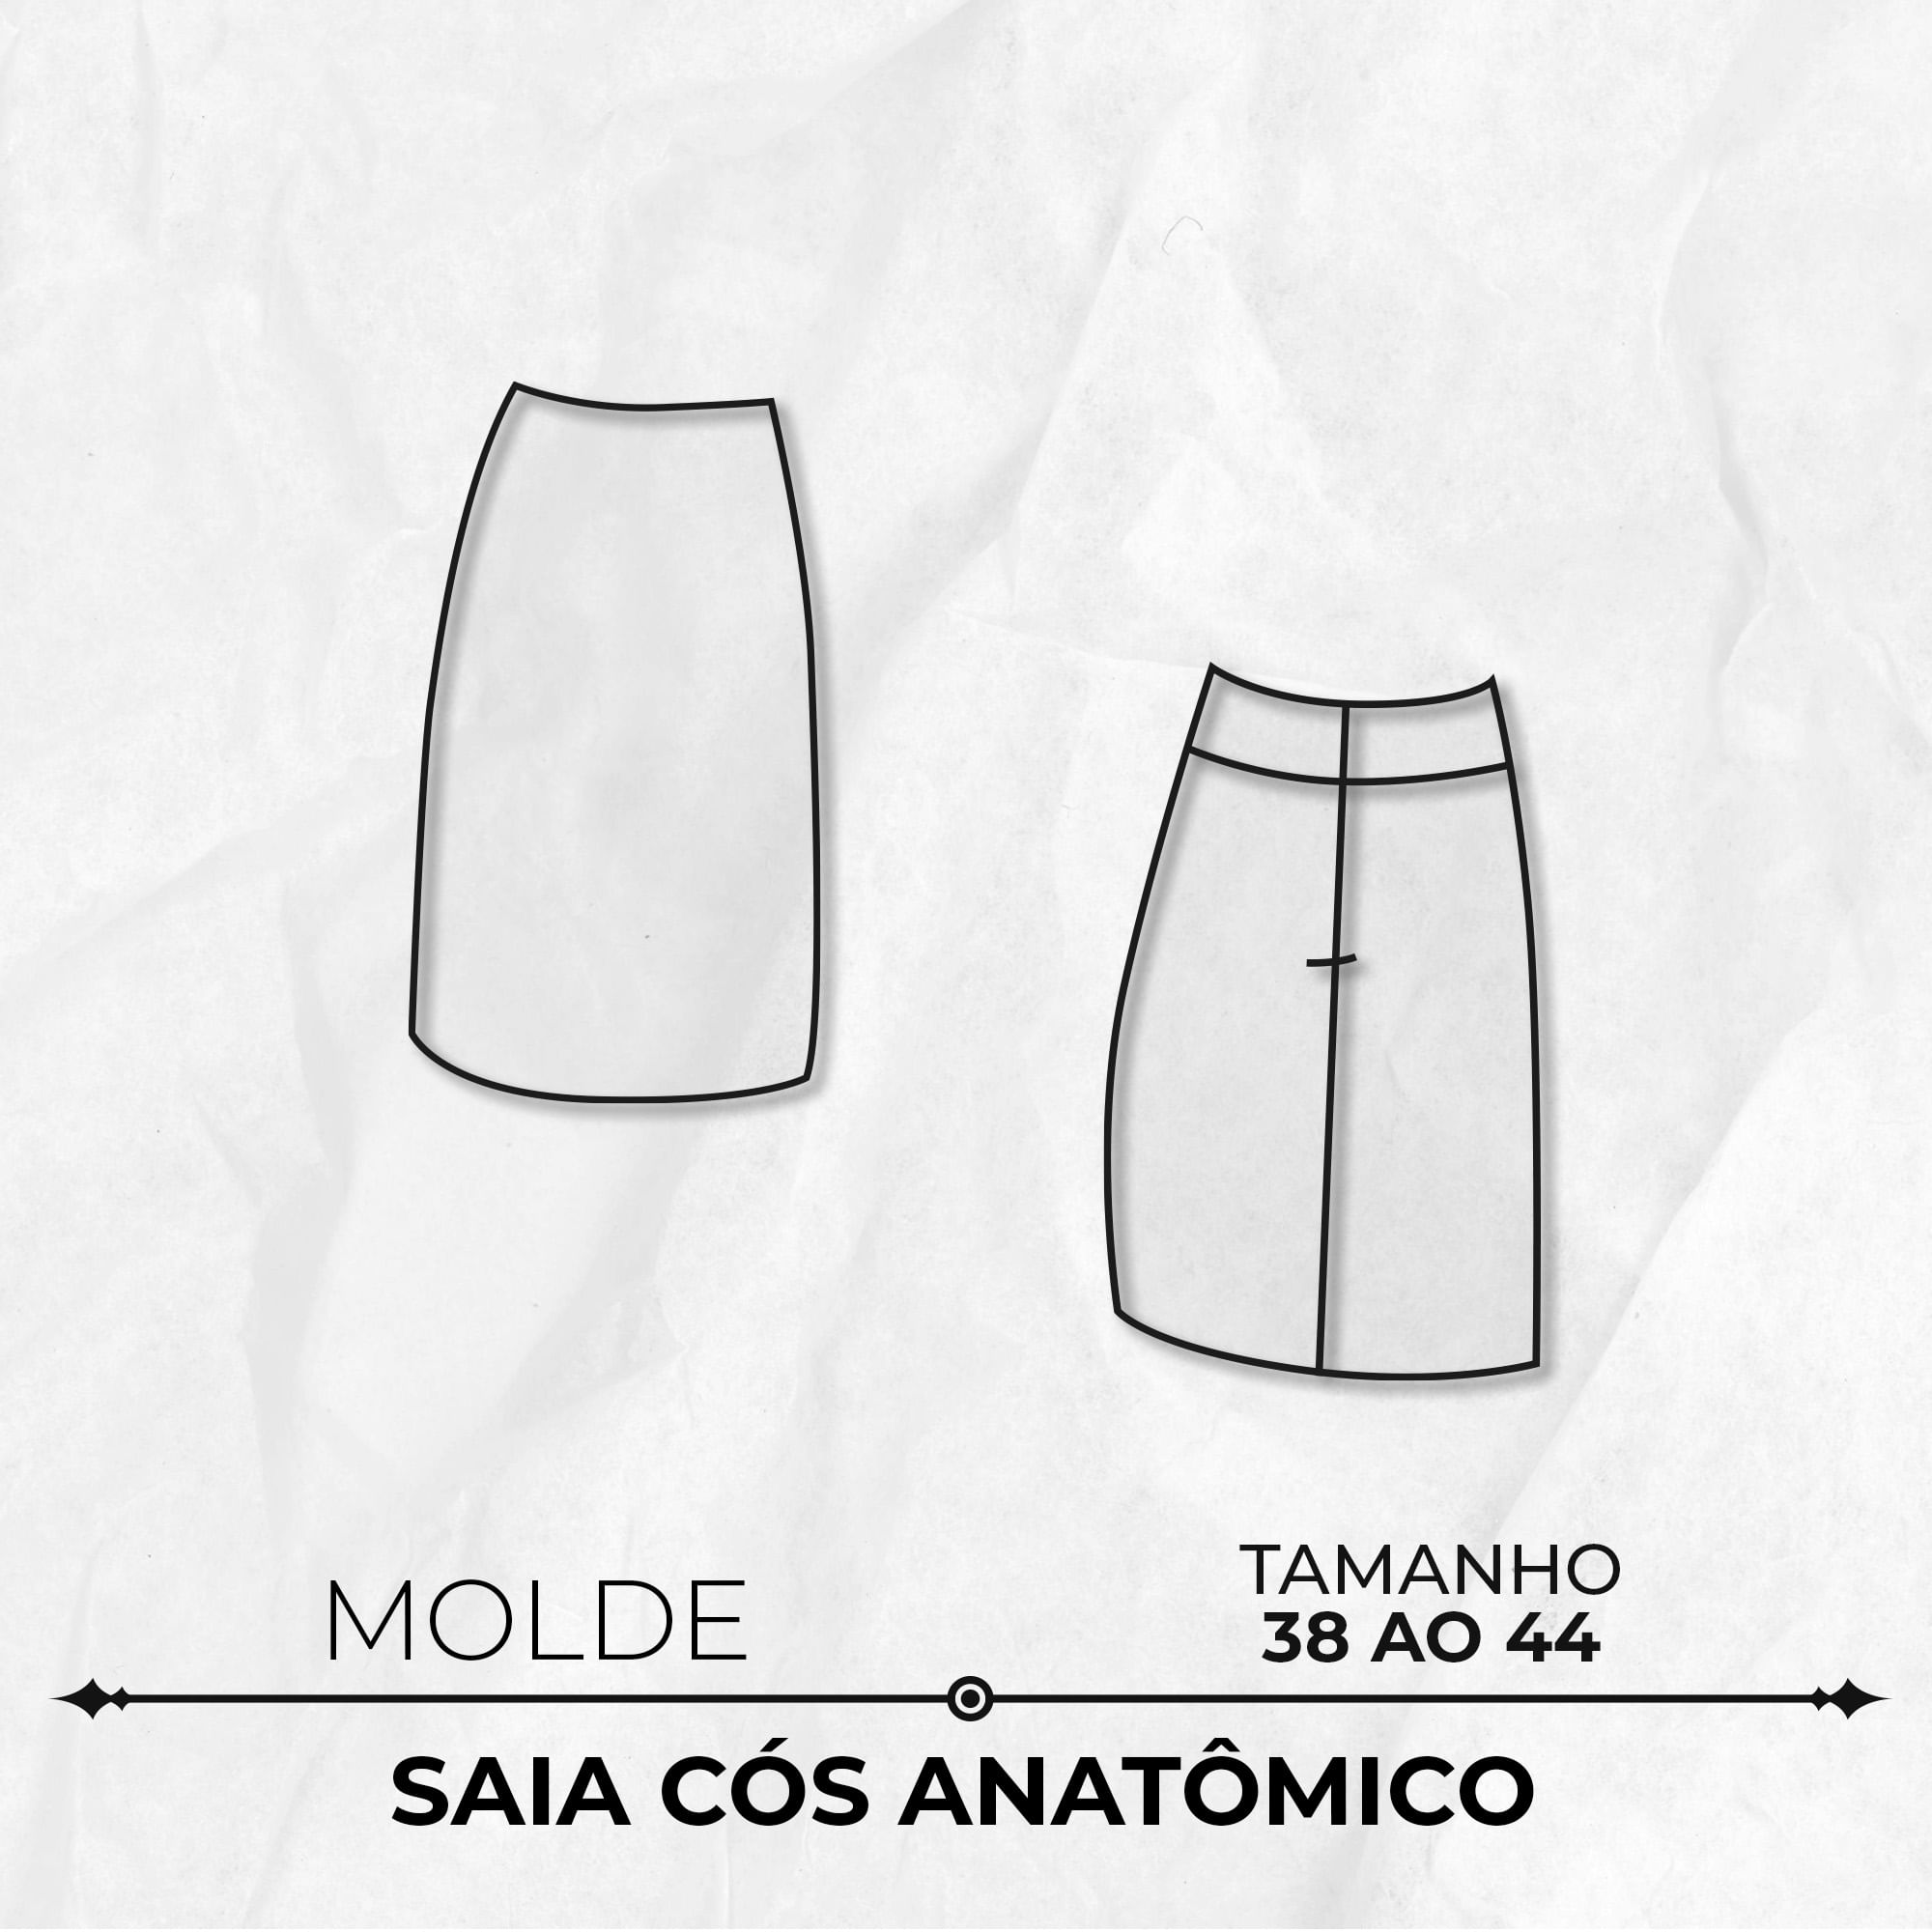 Molde de saia cós anatômico tamanho 38 ao 44 by Marlene Mukai